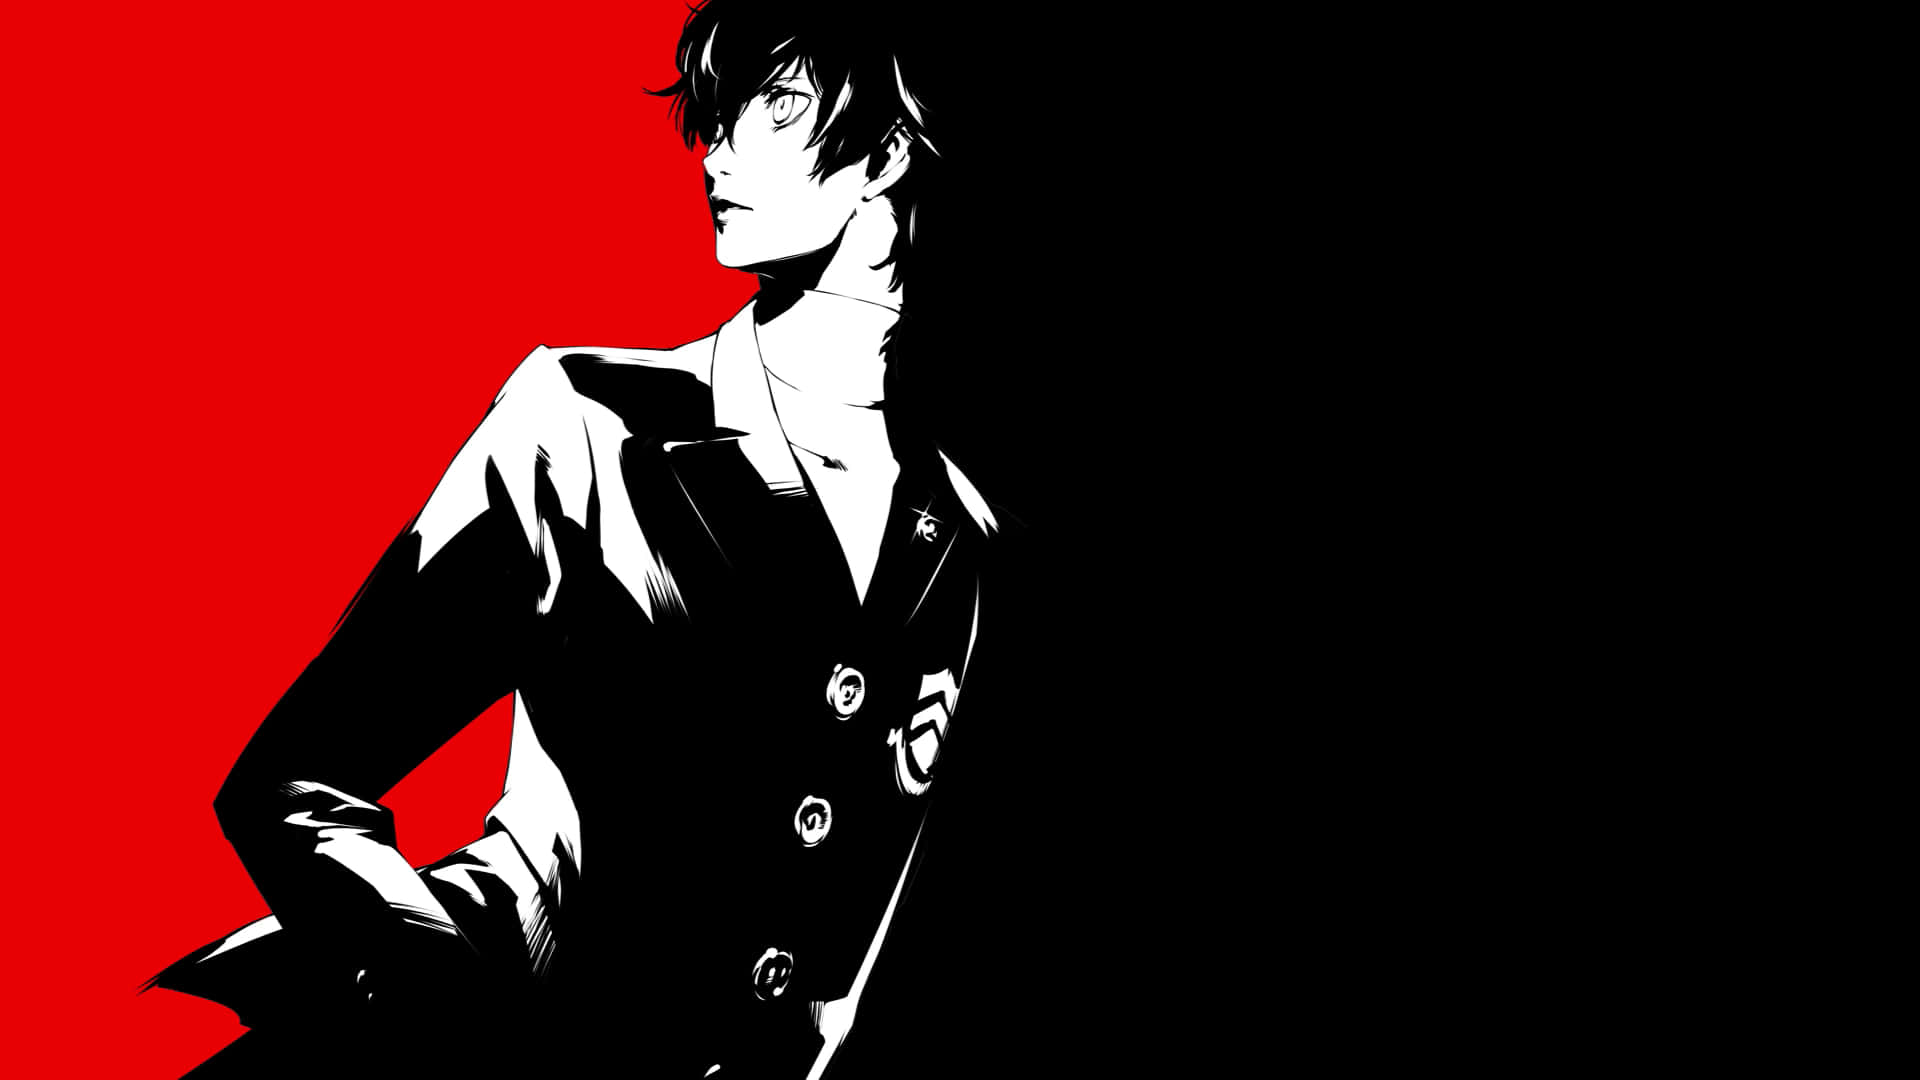 Wallpaper: Rød og sort en jakke Kostume Vægtapet af Persona 5 Joker. Wallpaper